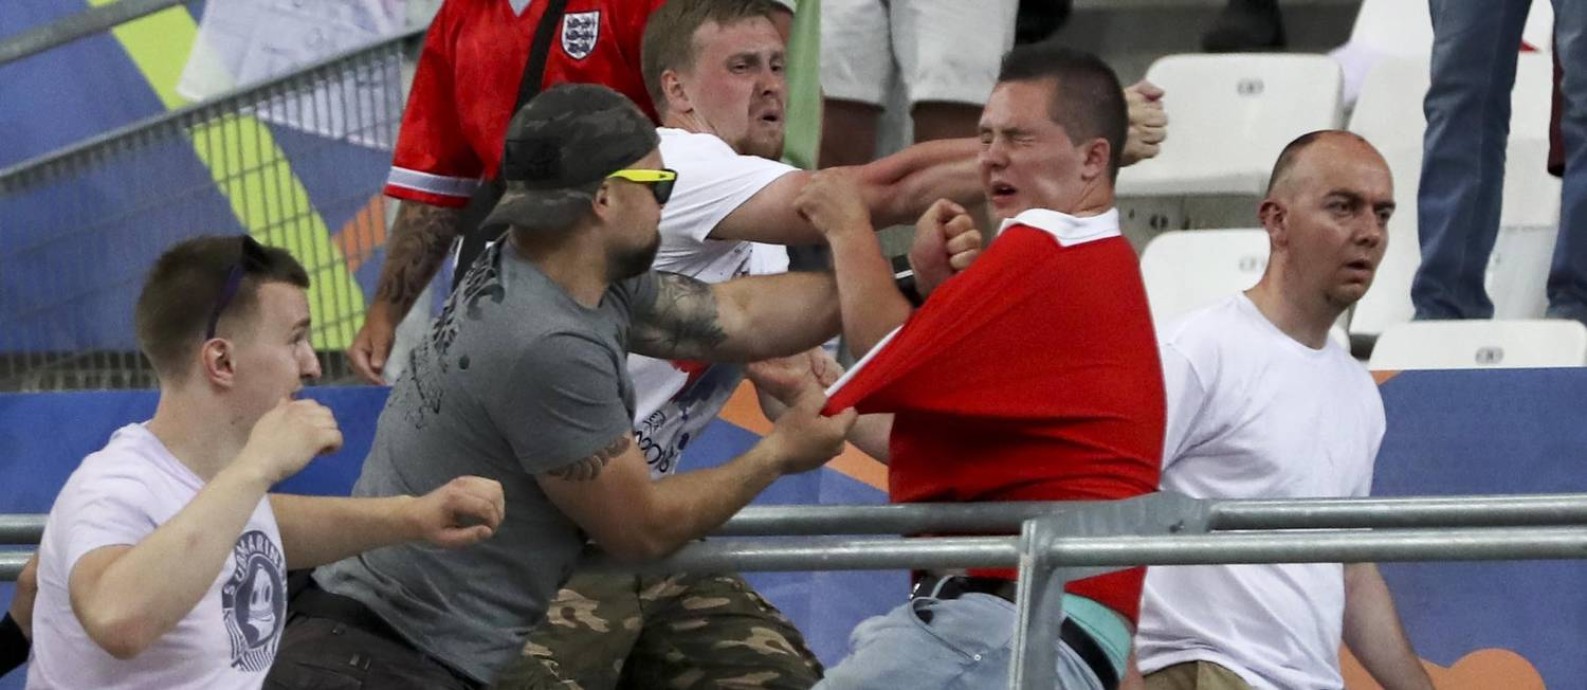 Hooligans de Rússia e Inglaterra brigaram dentro do Velodrome, em Marselha, durante a Euro-2016 Foto: Thanassis Stavrakis / AP